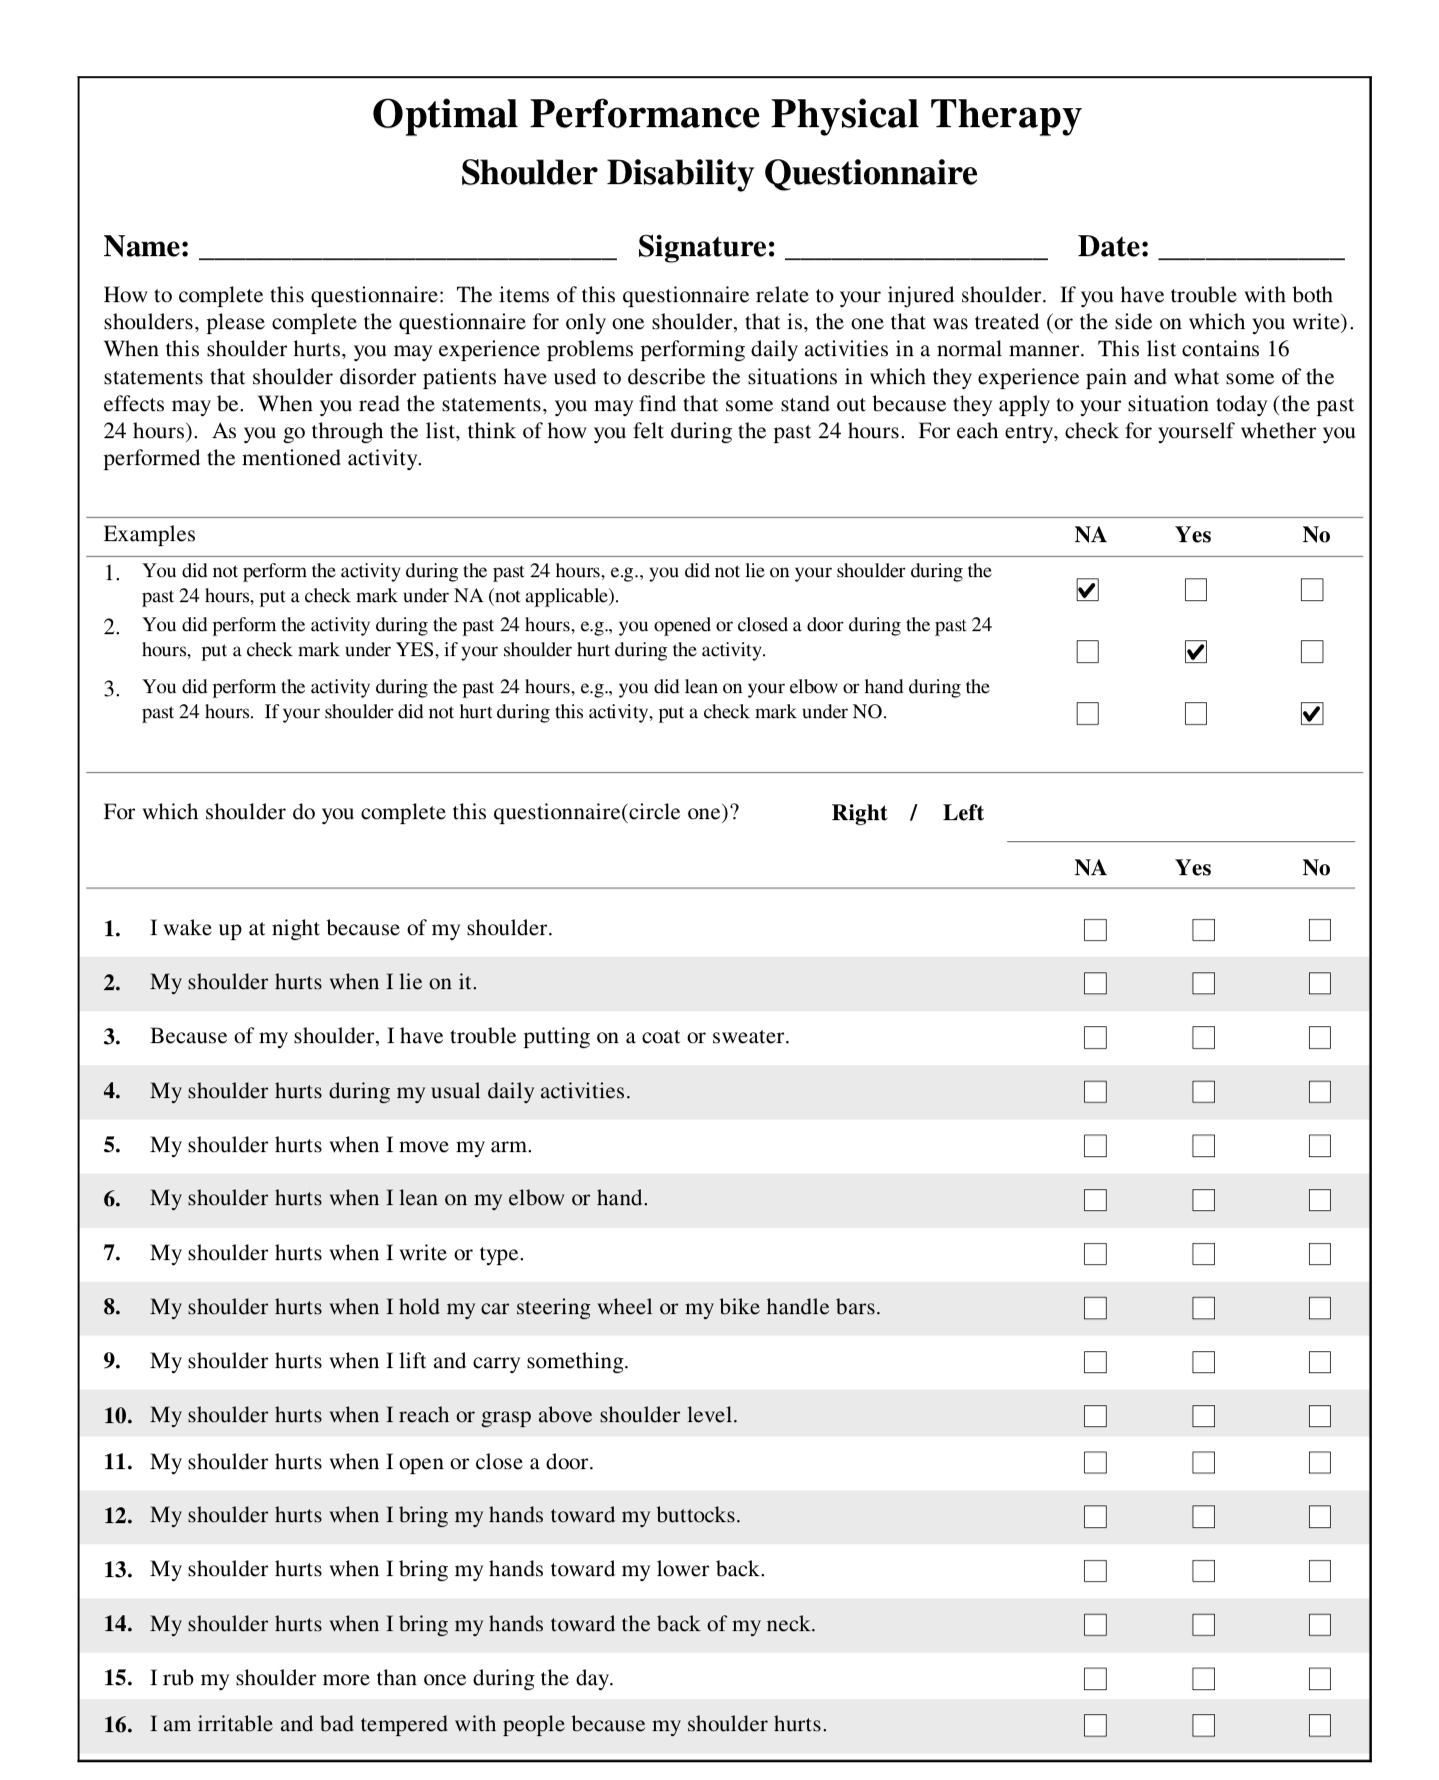 Shoulder Disability Questionnaire